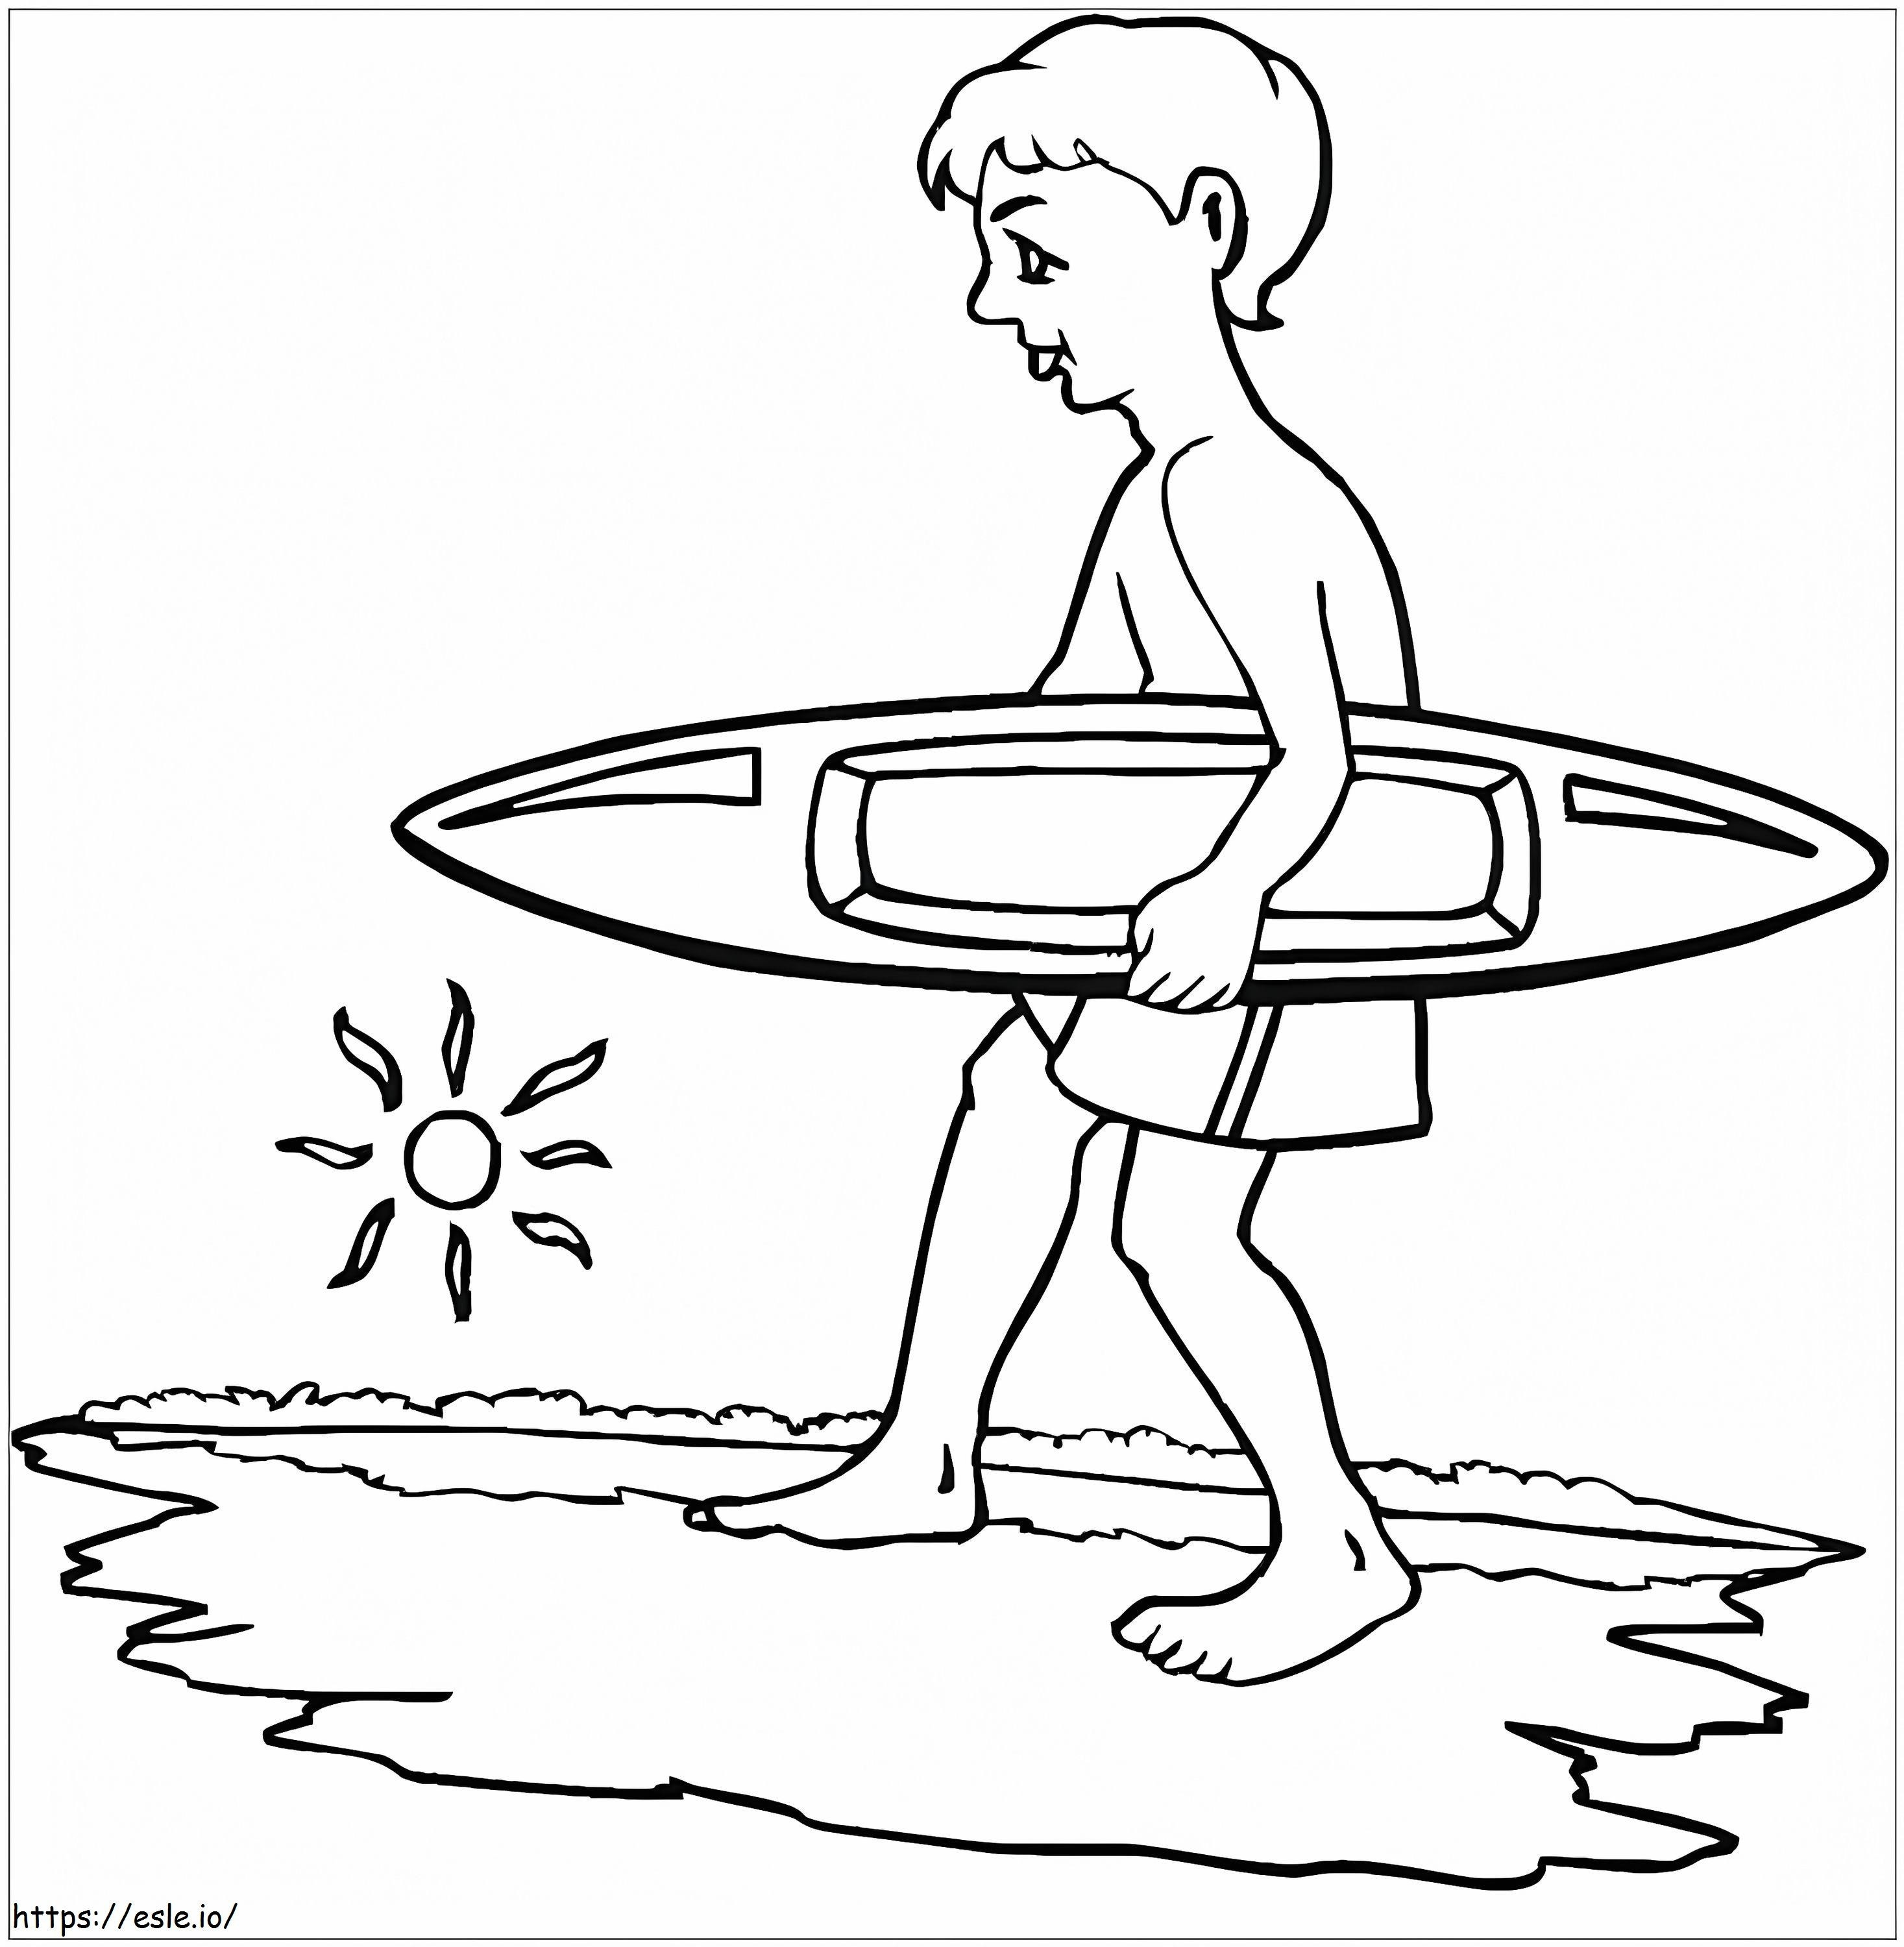 Sörf tahtası tutan çocuk boyama